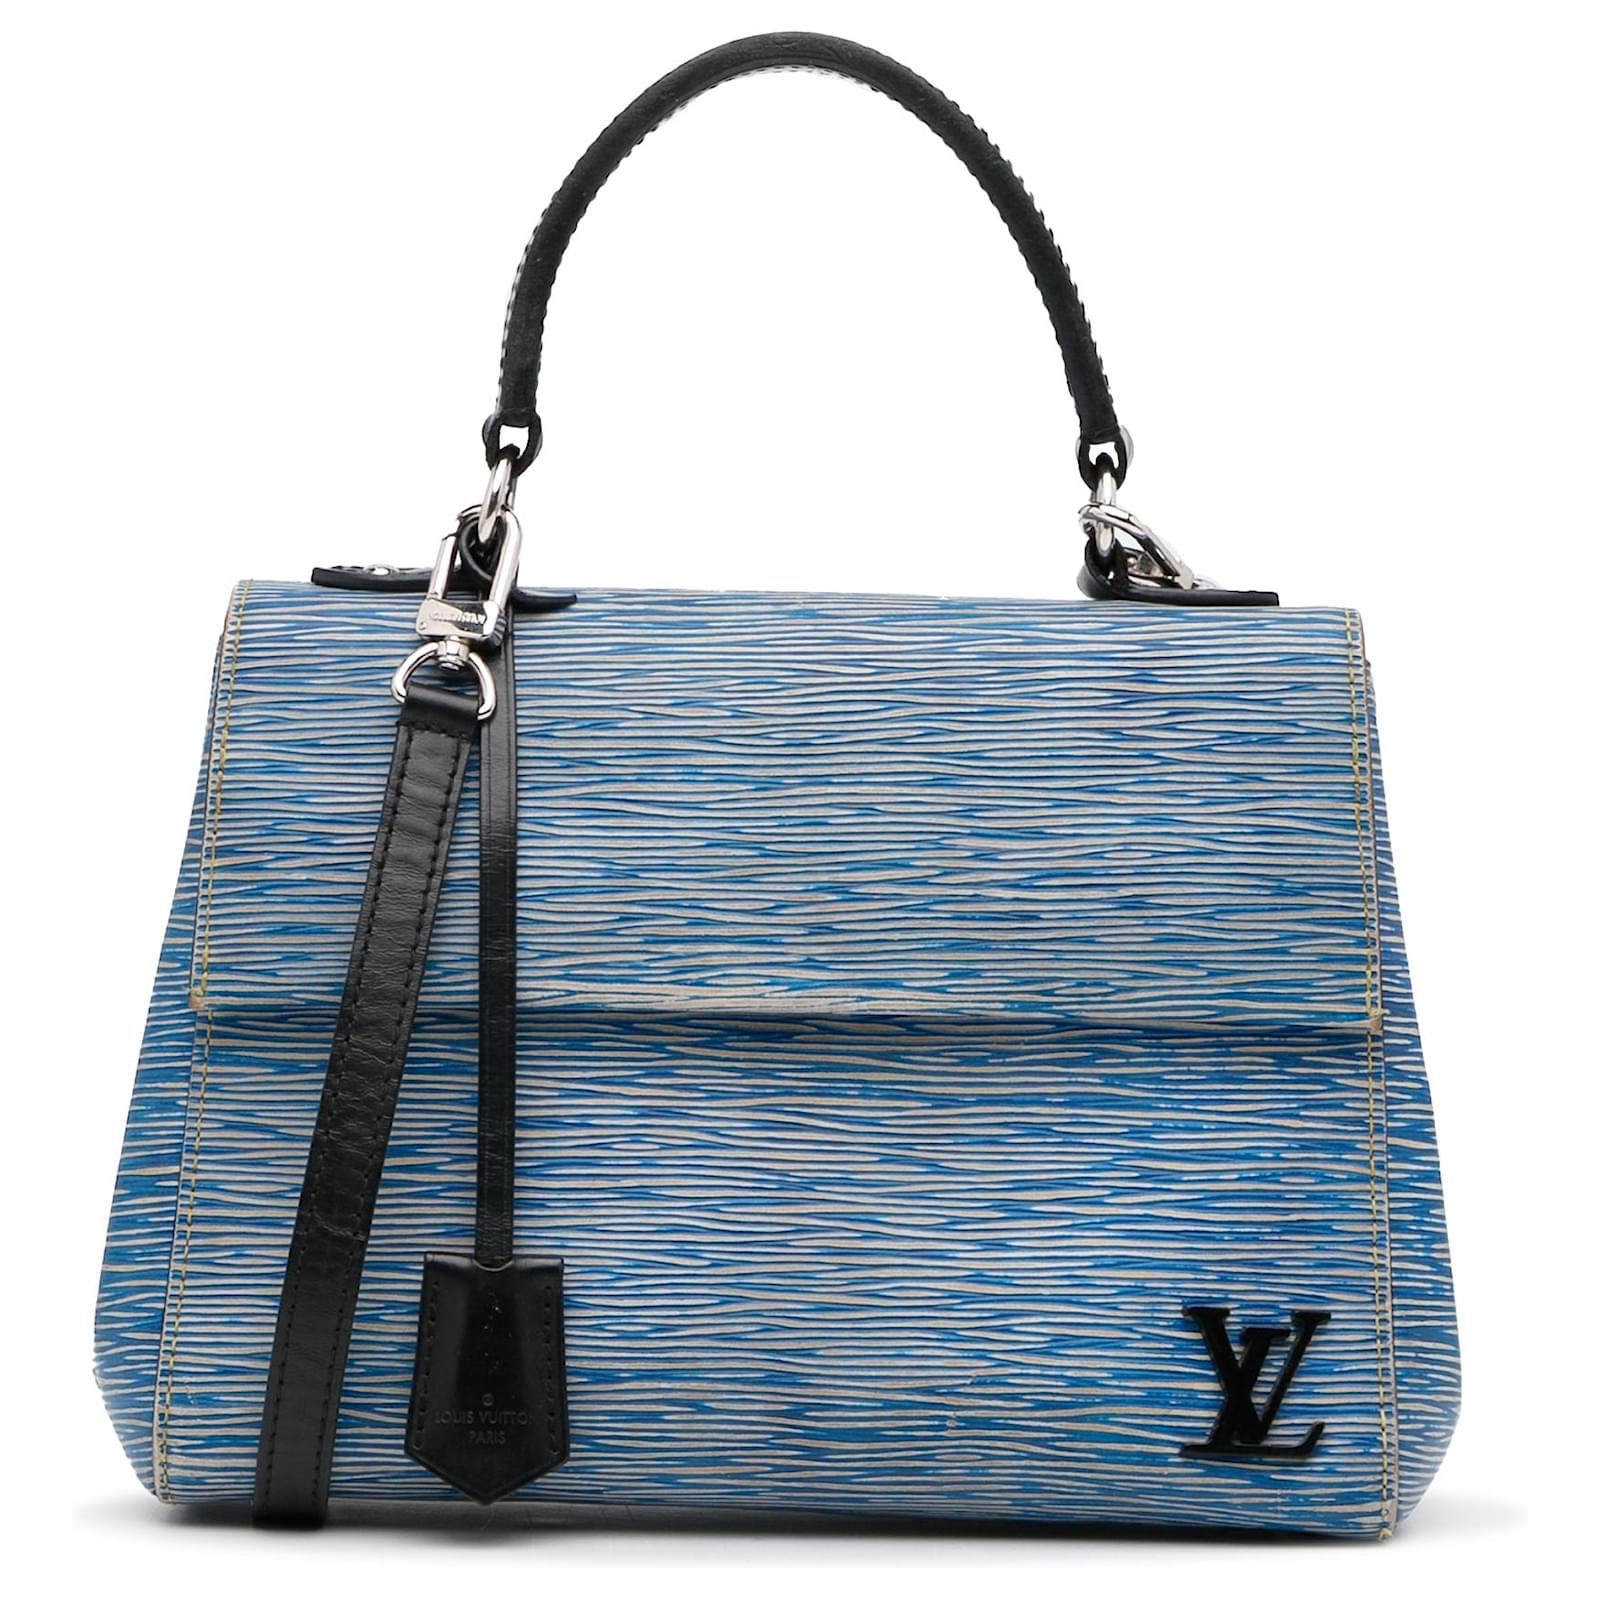 Louis Vuitton borsa Cluny in pelle Epi azzurra